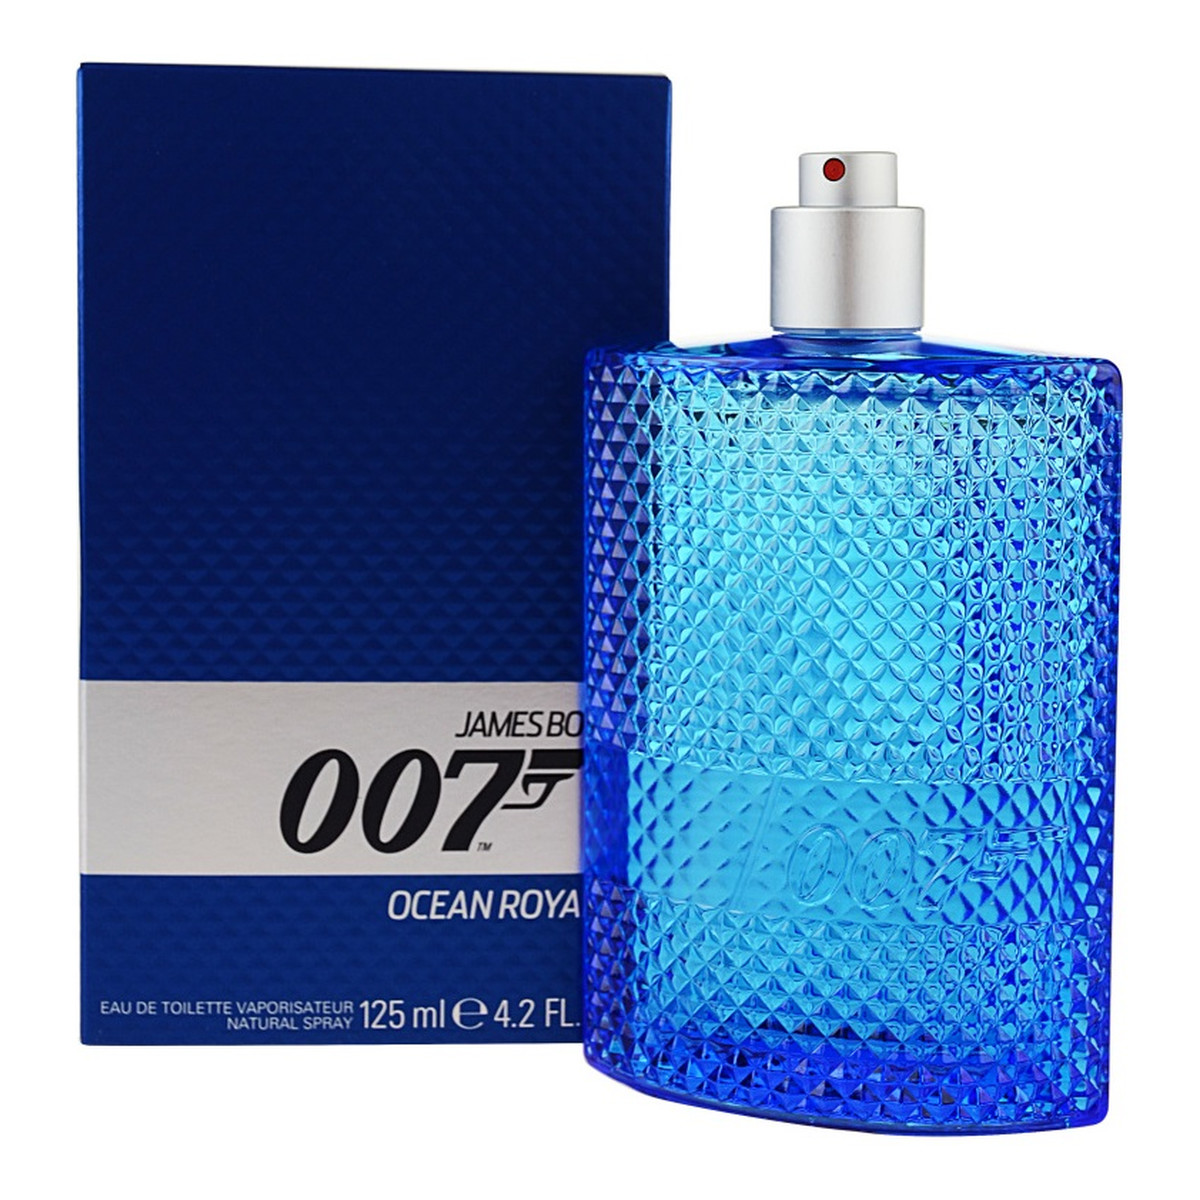 James Bond 007 Ocean Royale woda toaletowa dla mężczyzn 125ml